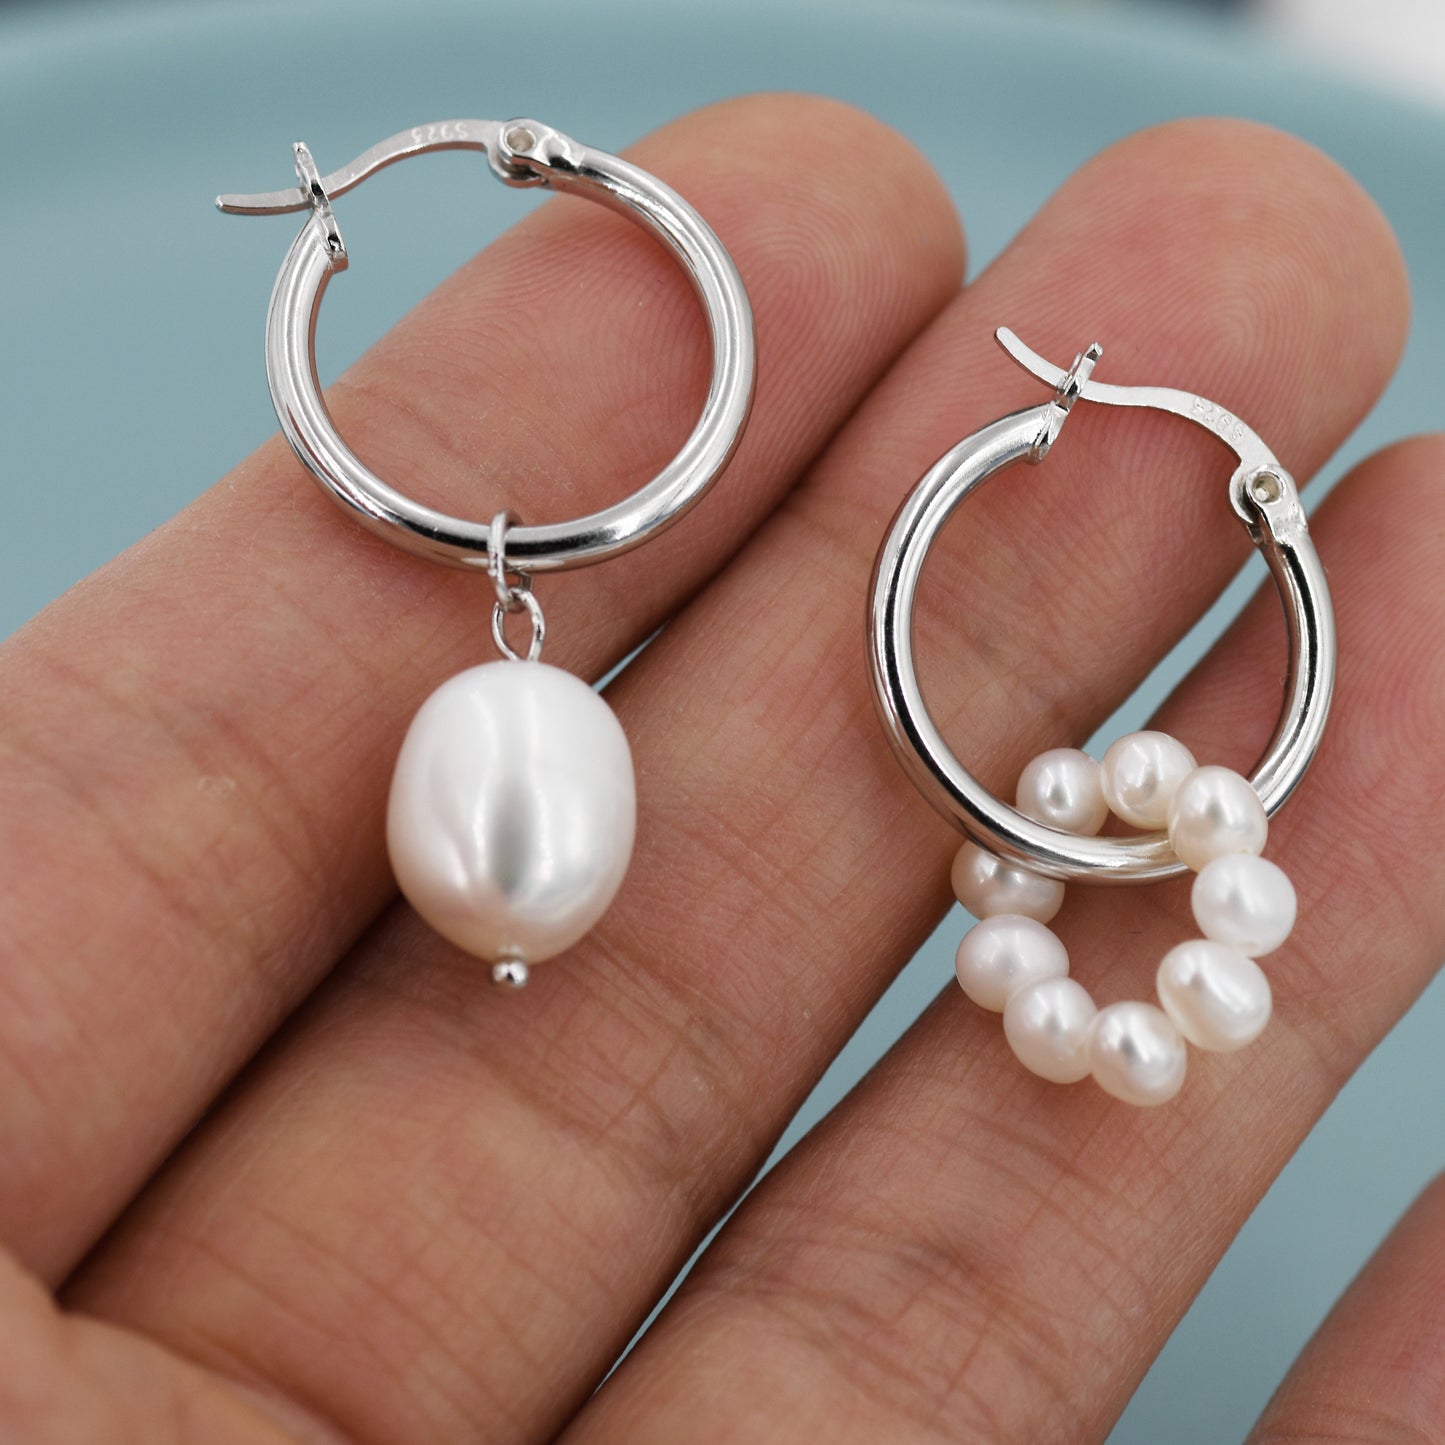 Mismatched Detachable Pearl Dangle Hoop Earrings in Sterling Silver, Silver or Gold, 14mm Hoops, Simple Hoop Earrings